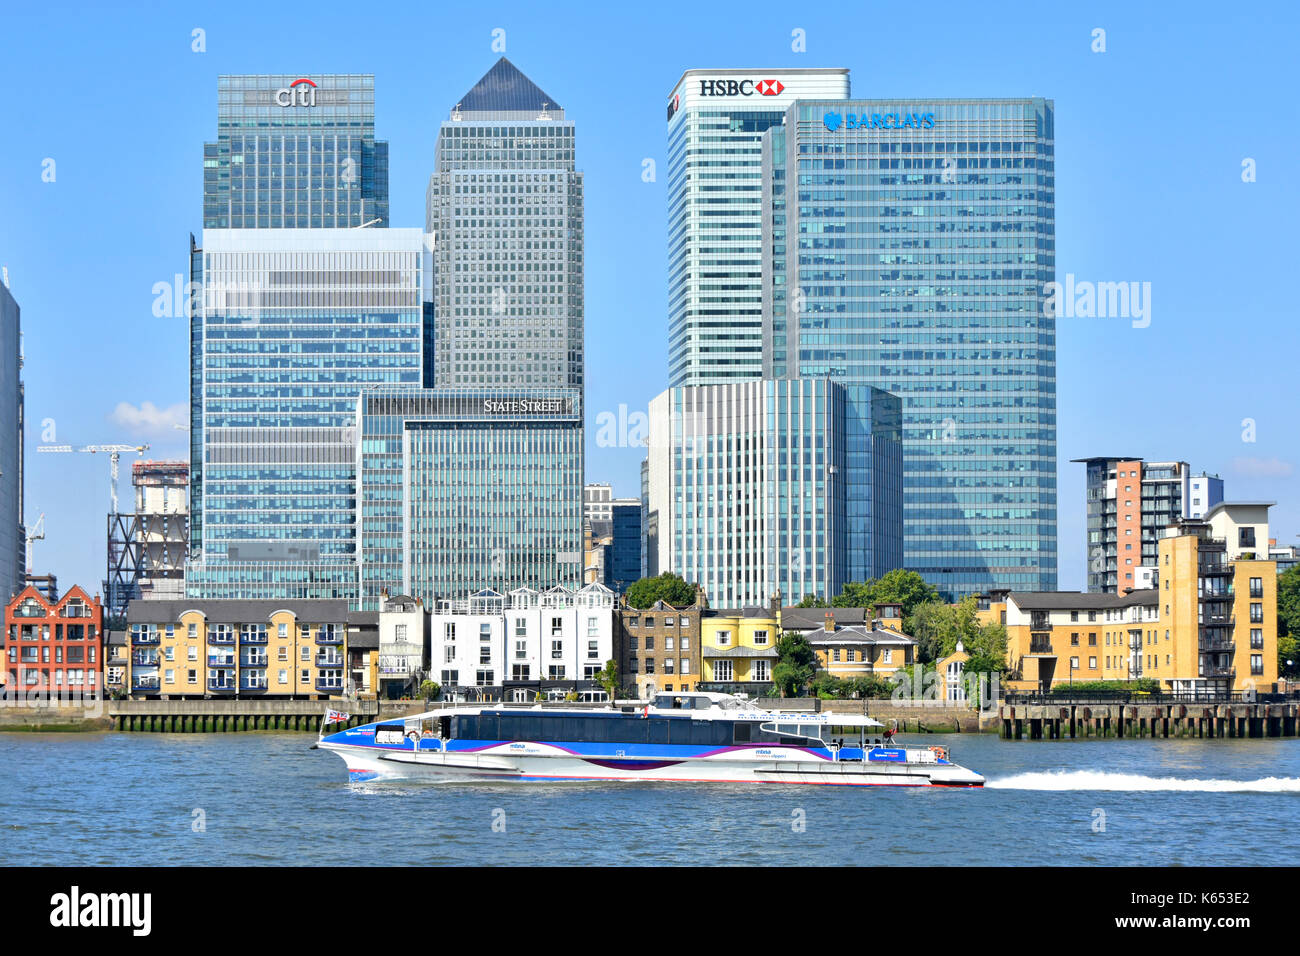 Themse & London Docklands Canary Wharf Skyline von modern Wahrzeichen Banken Wolkenkratzer Gebäude & Thames Clipper schnellen Flussbus Isle of Dogs Großbritannien Stockfoto